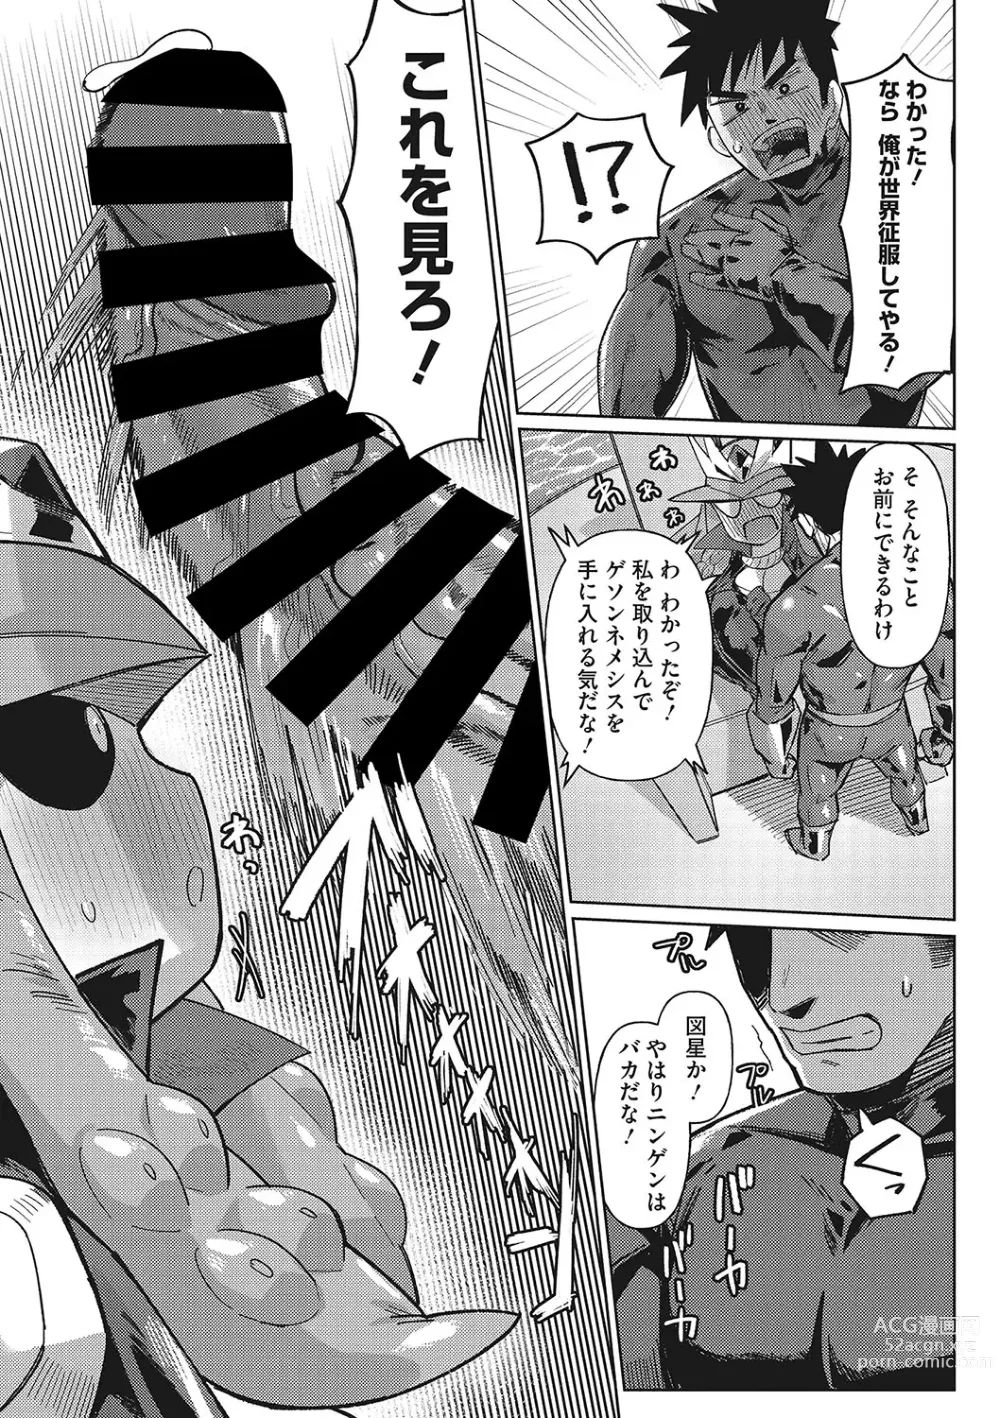 Page 8 of manga Jingai The Universe